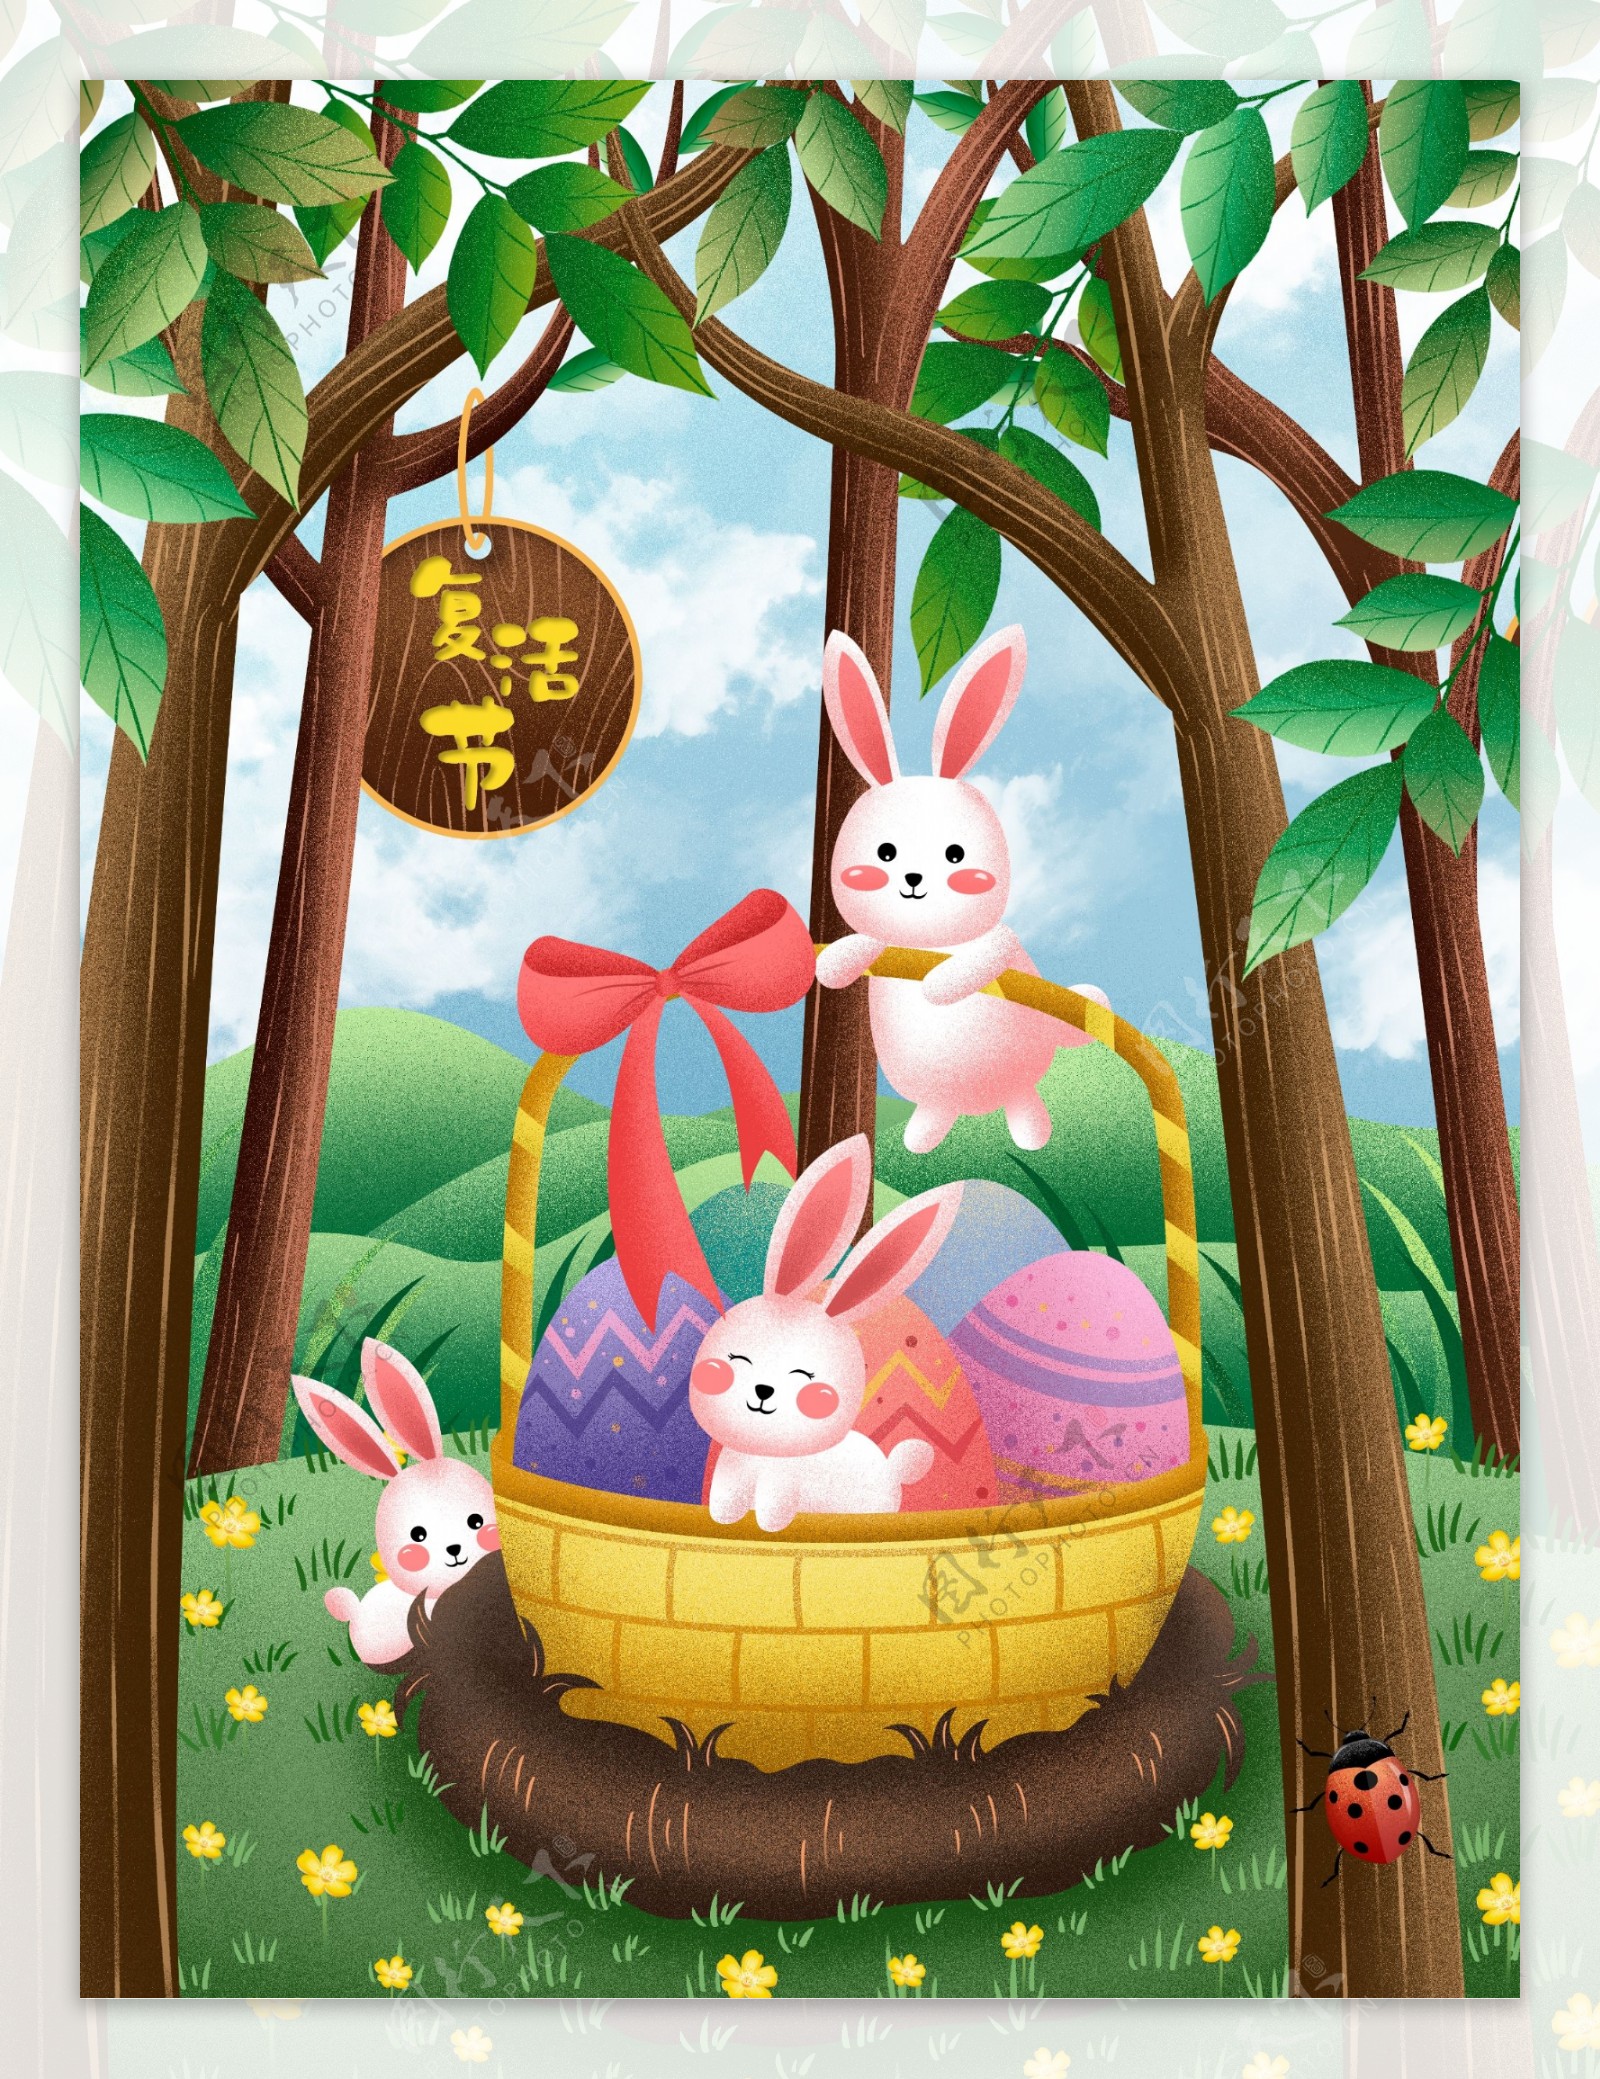 原创2019复活节兔子与彩蛋噪点插画